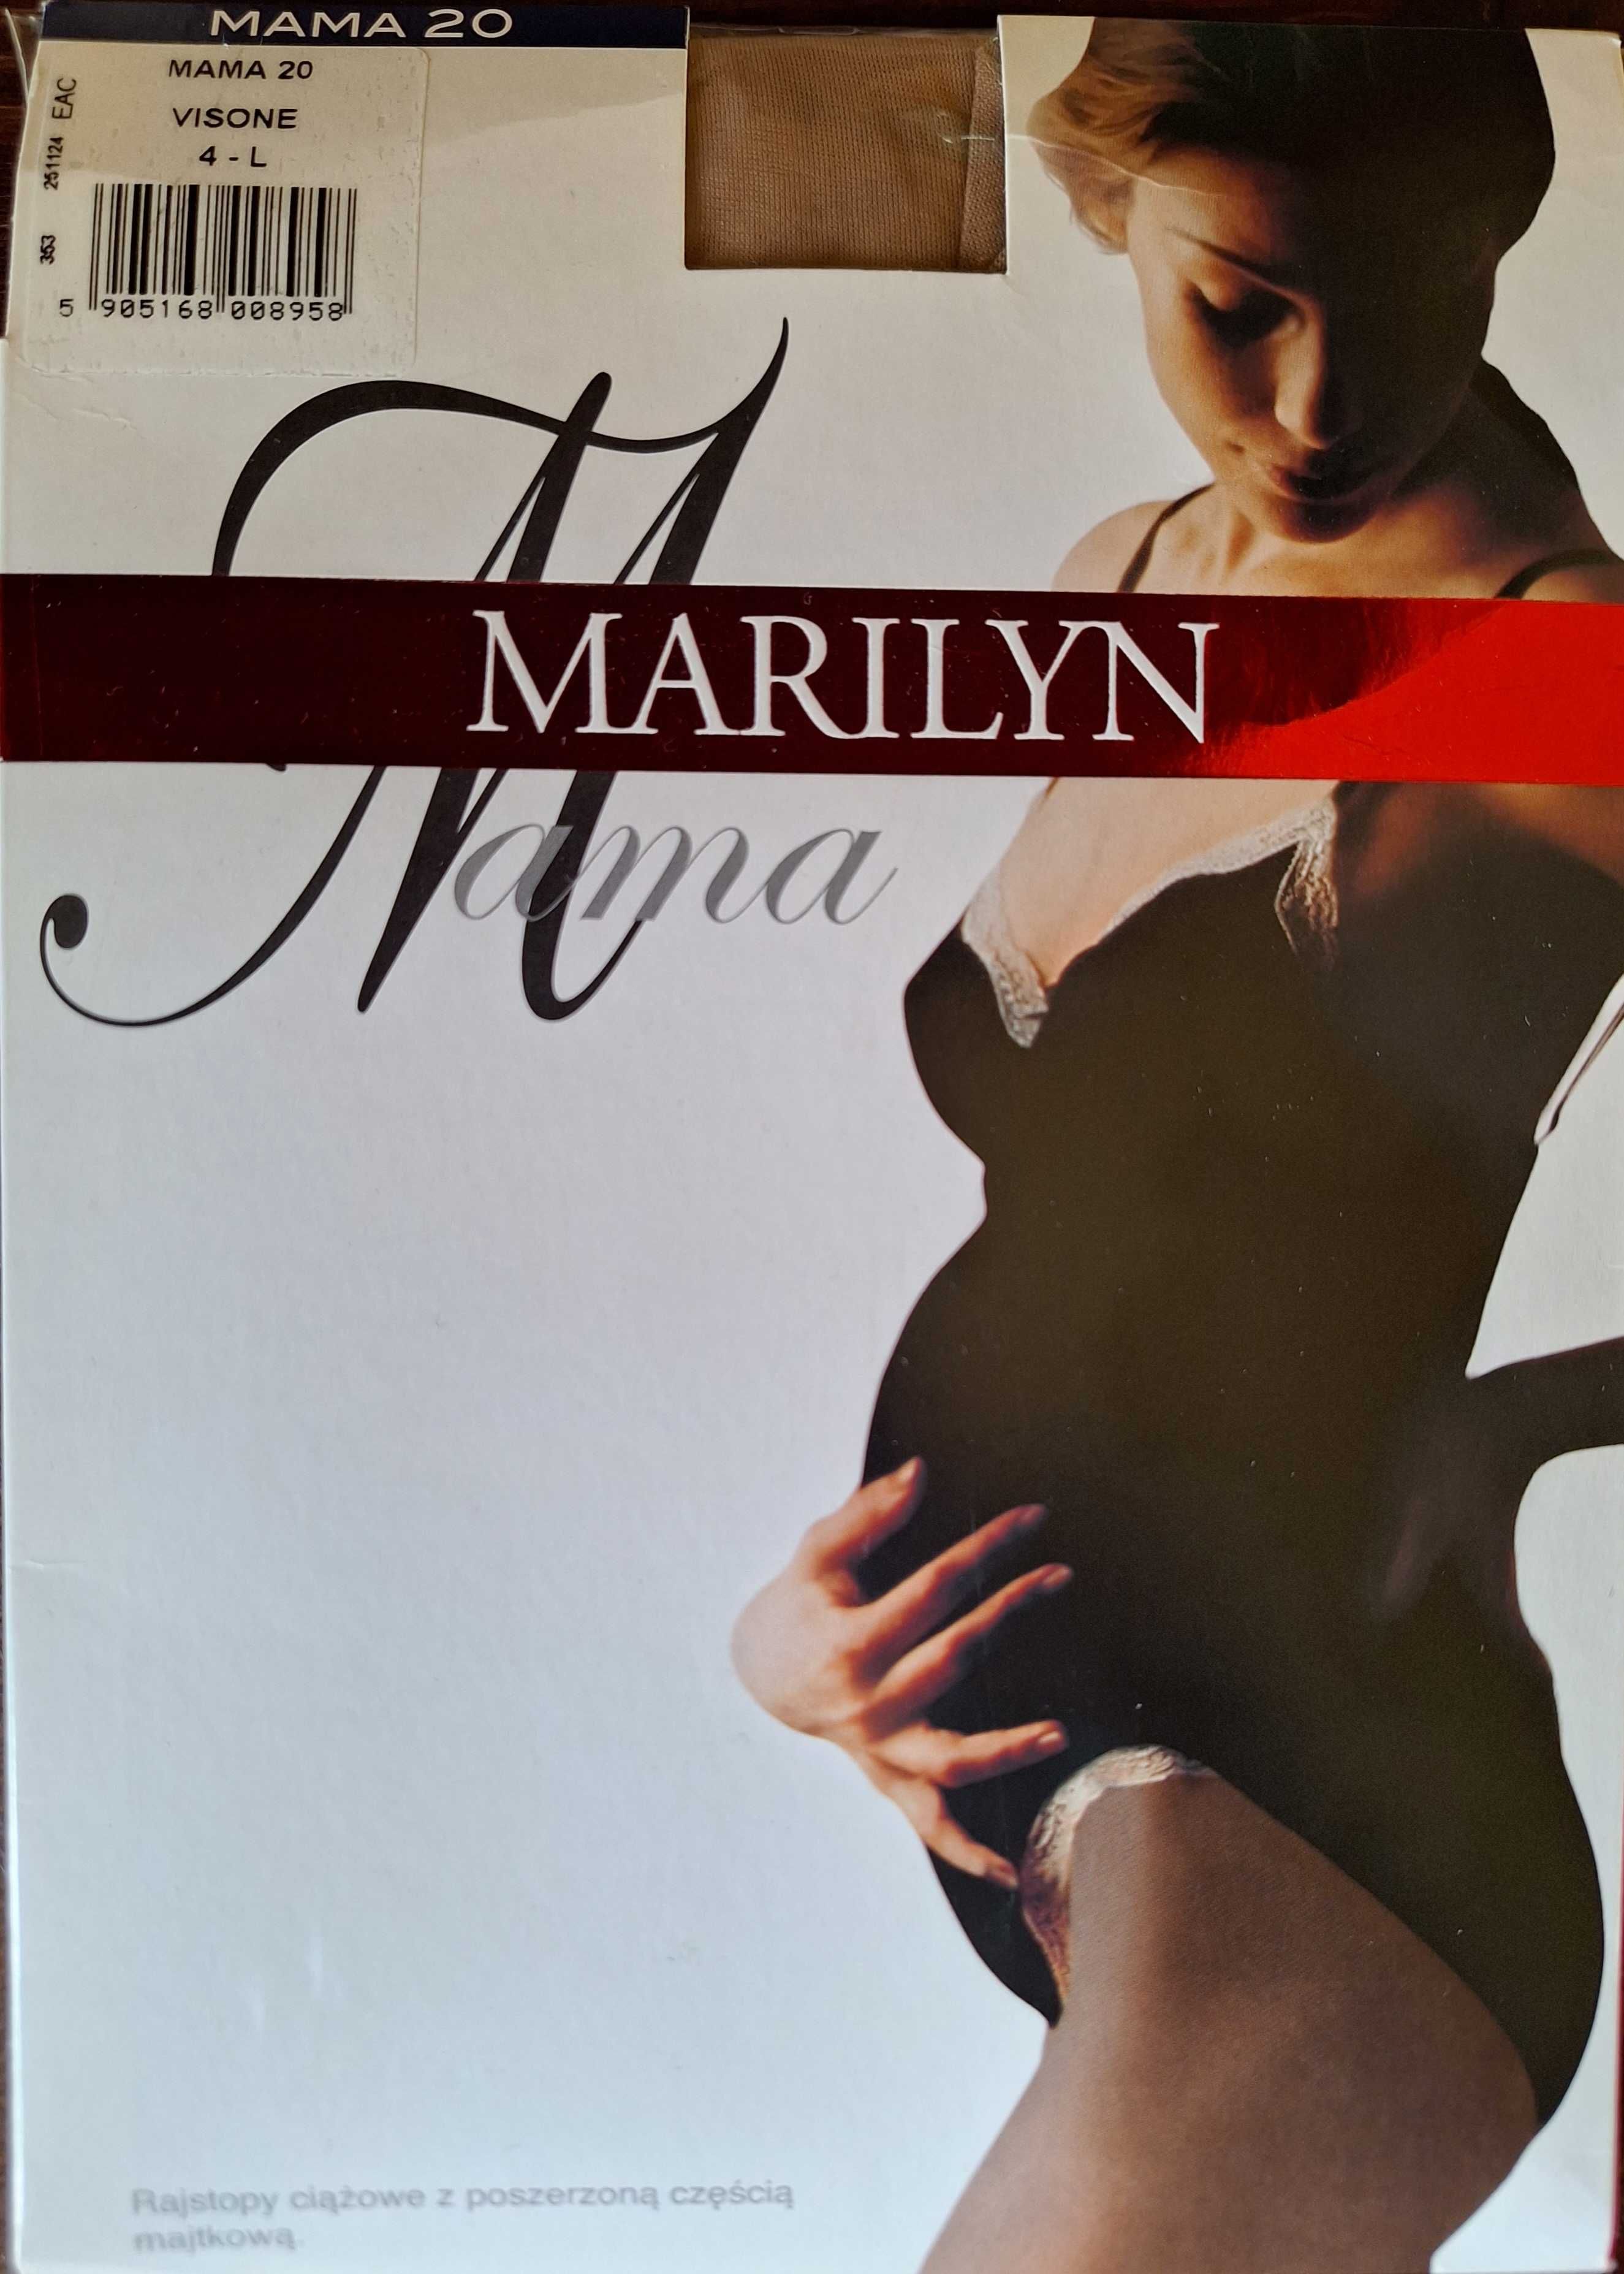 3 pary nowych rajstop ciążowych Marilyn Mama